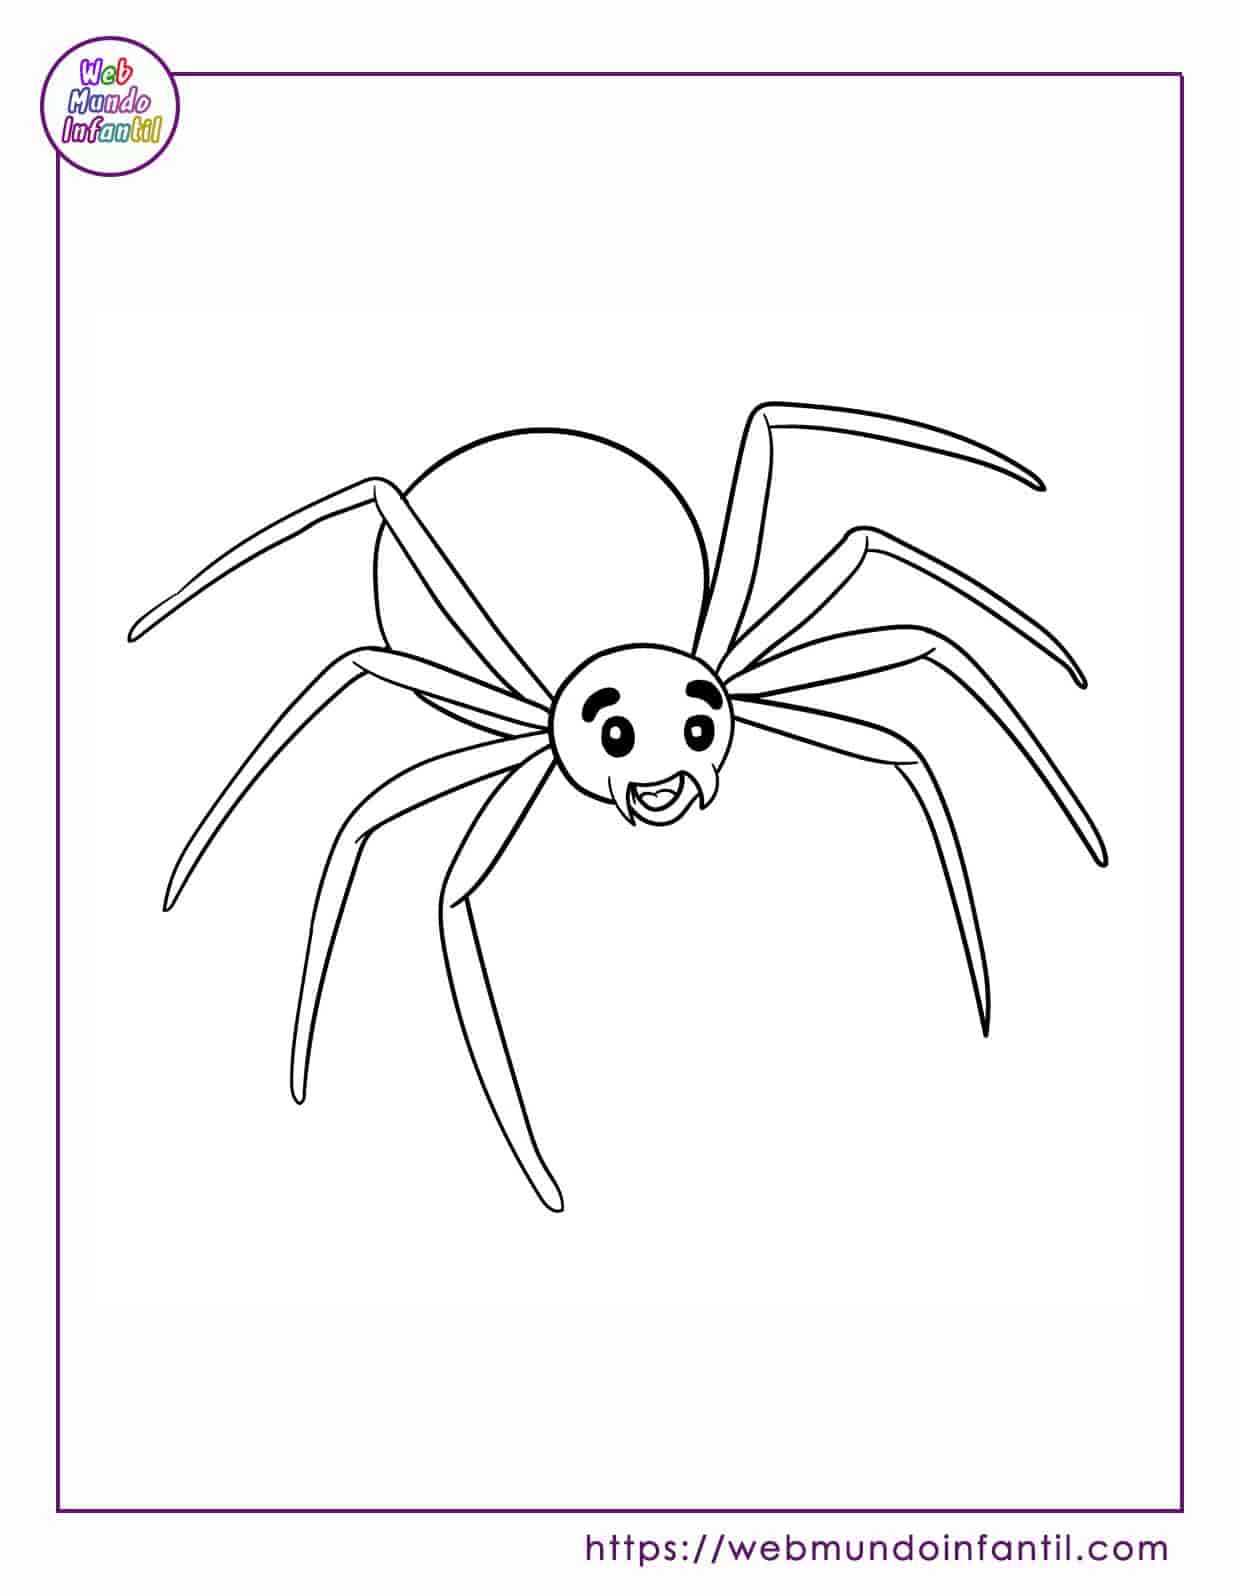 Dibujo de Divertido Dibujo de una Araña para colorear  Dibujos para  colorear imprimir gratis